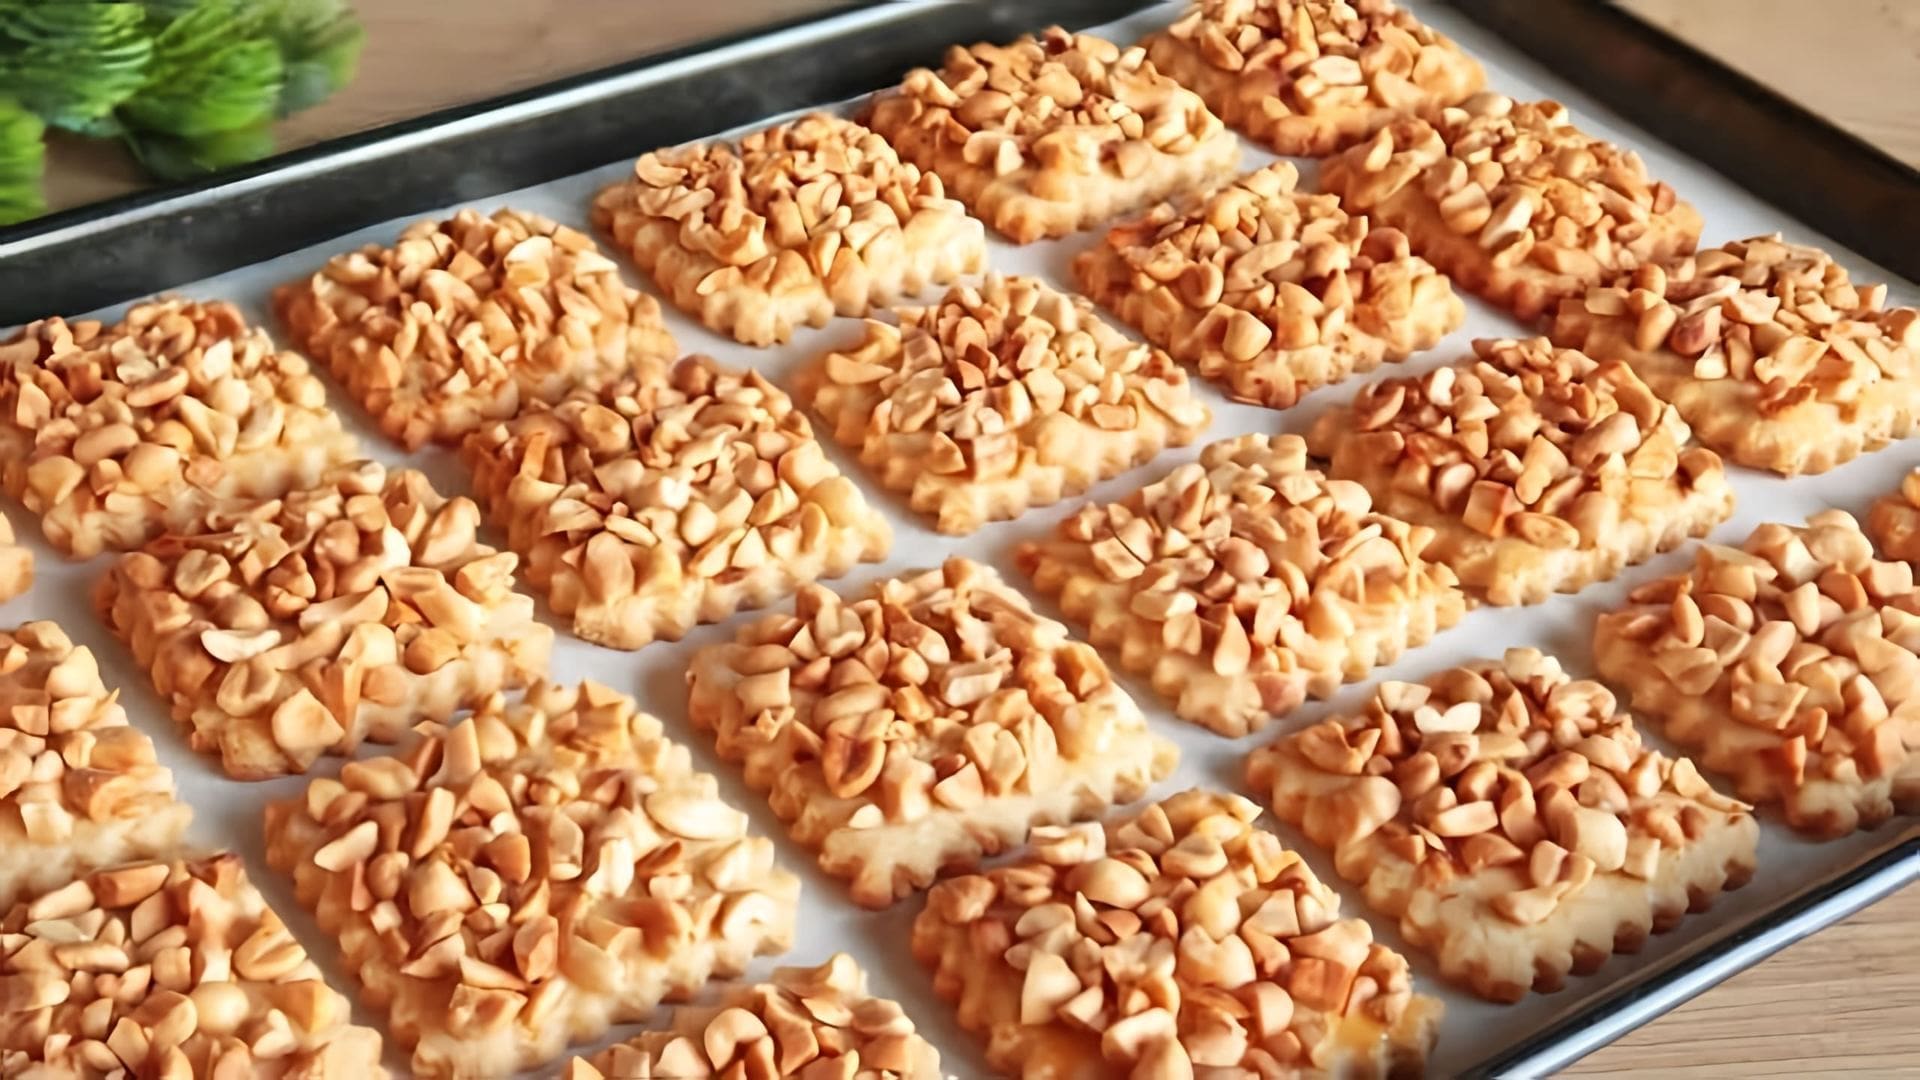 В этом видео демонстрируется рецепт приготовления печенья с арахисом